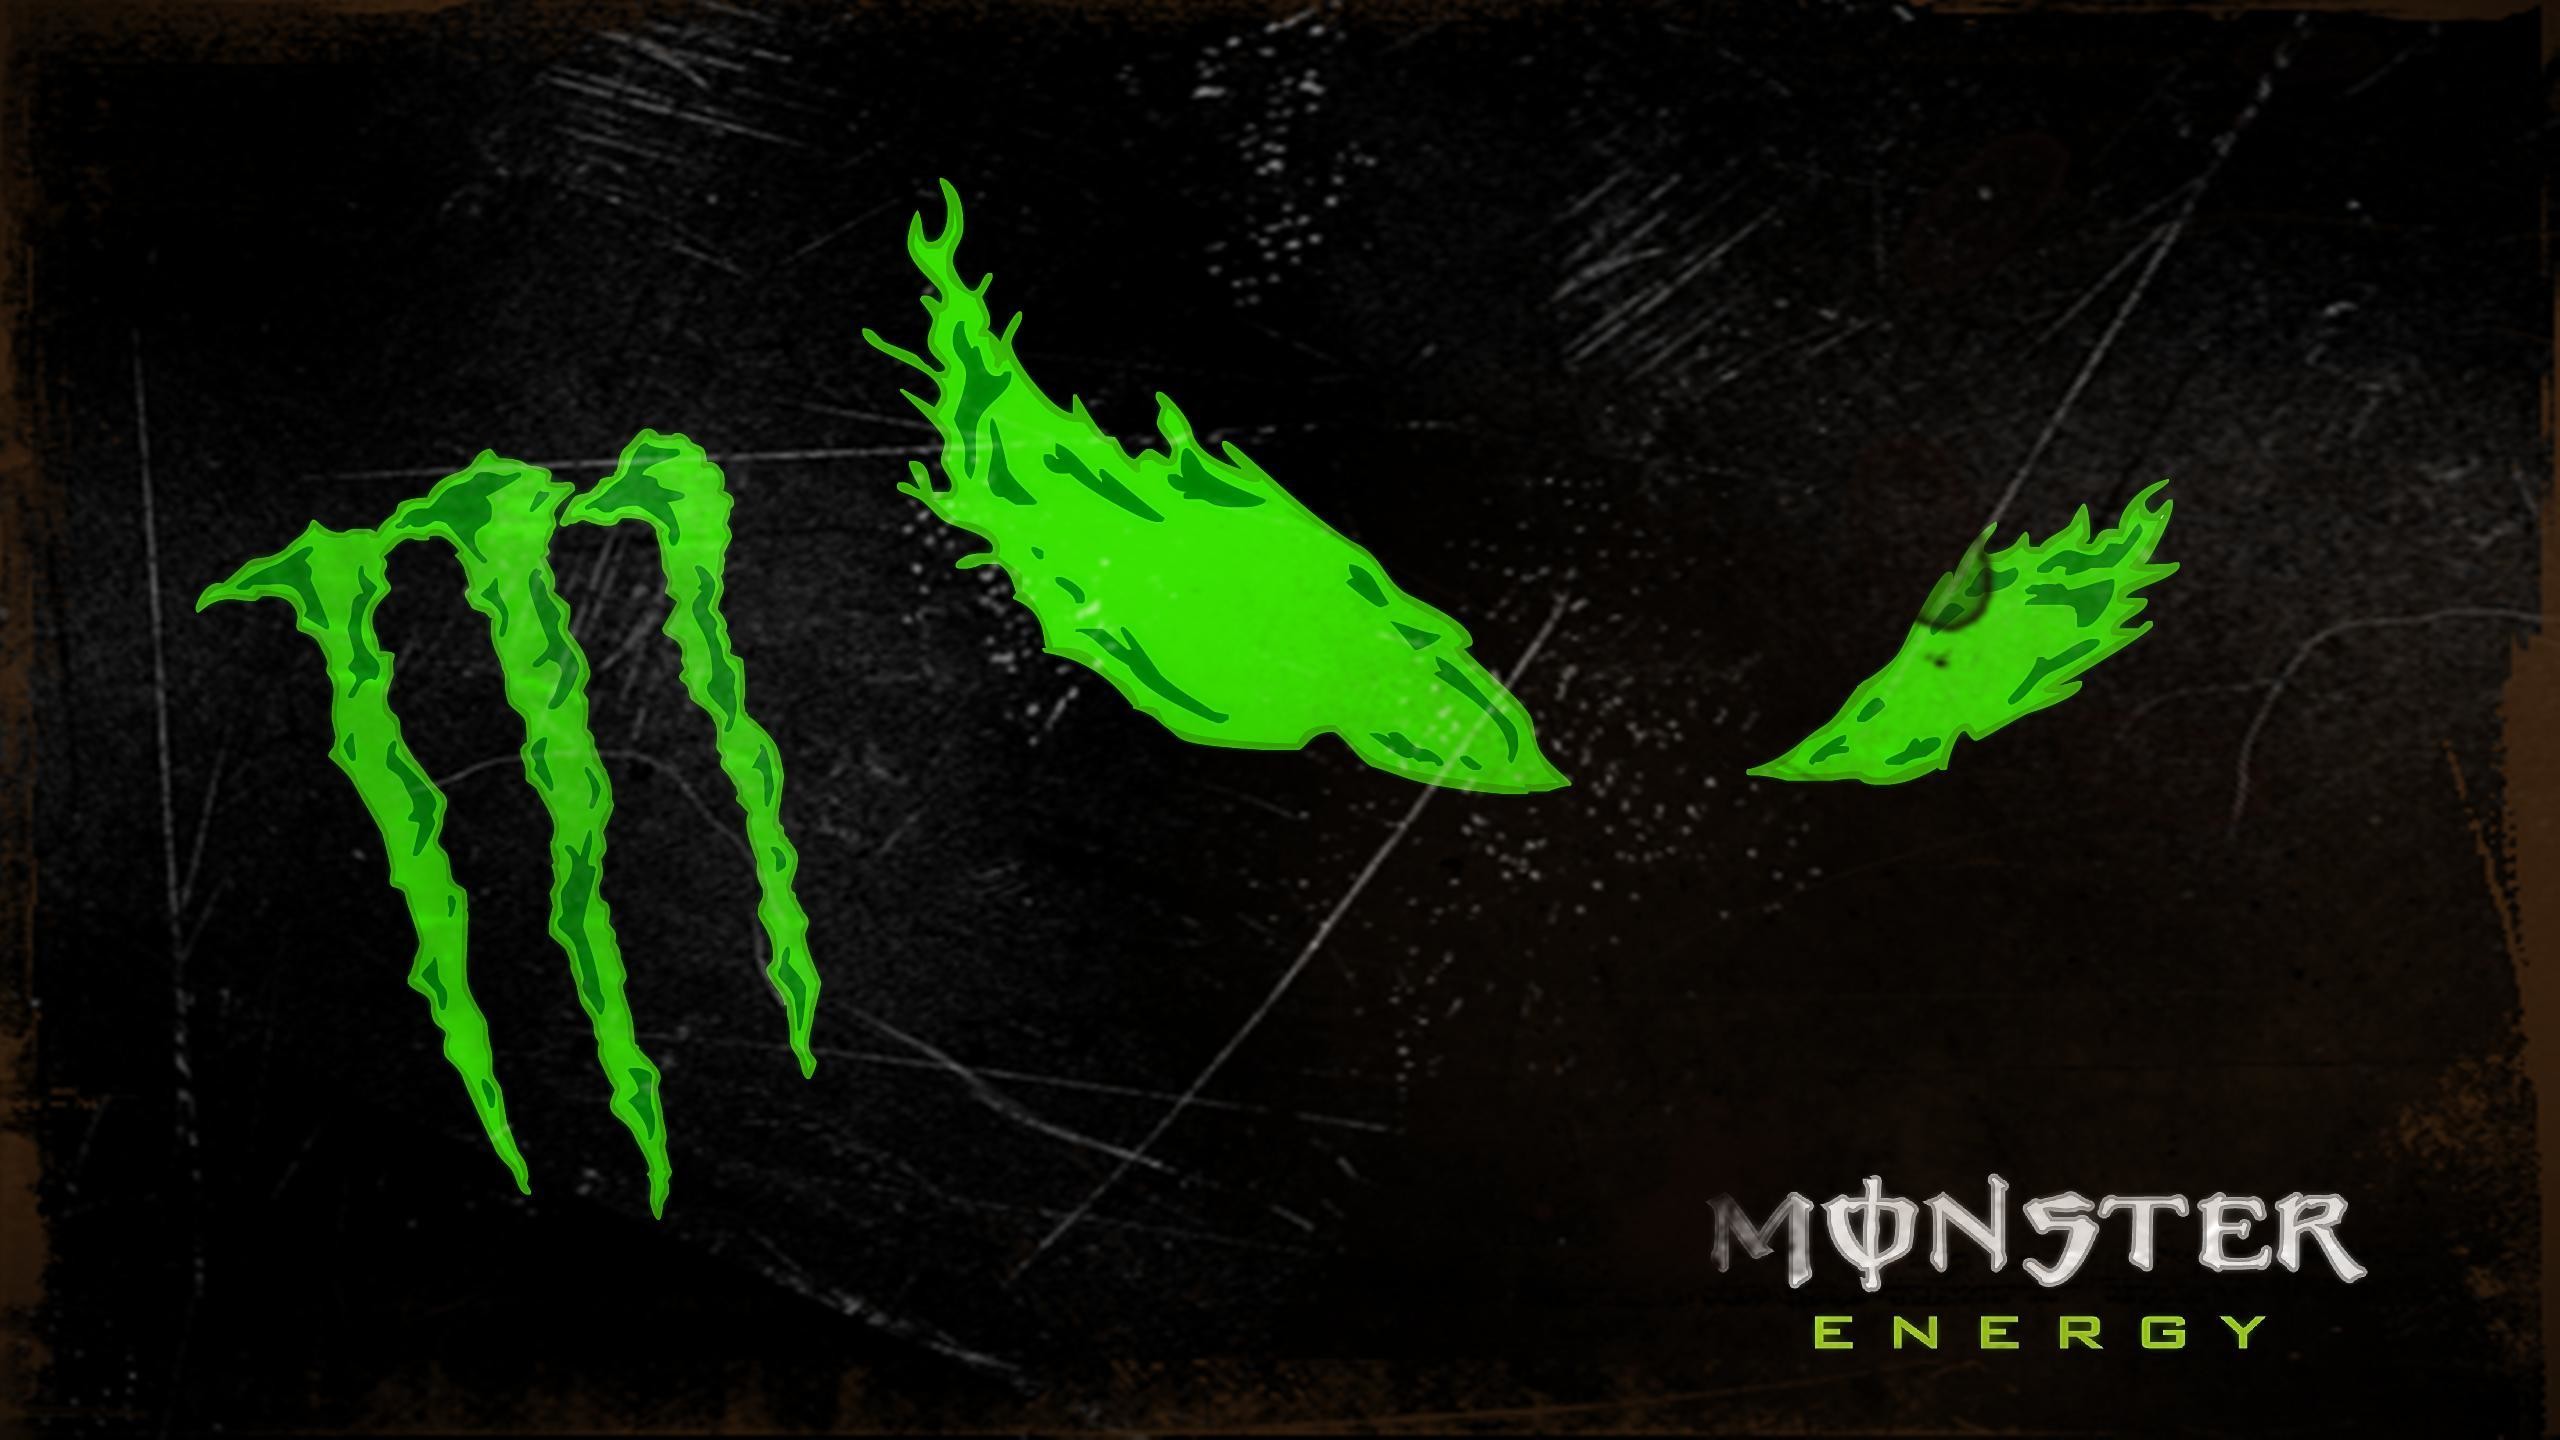 2560x1440 Monster Energy Logo Wallpaper Image #8792 Wallpaper | Wallpaper .